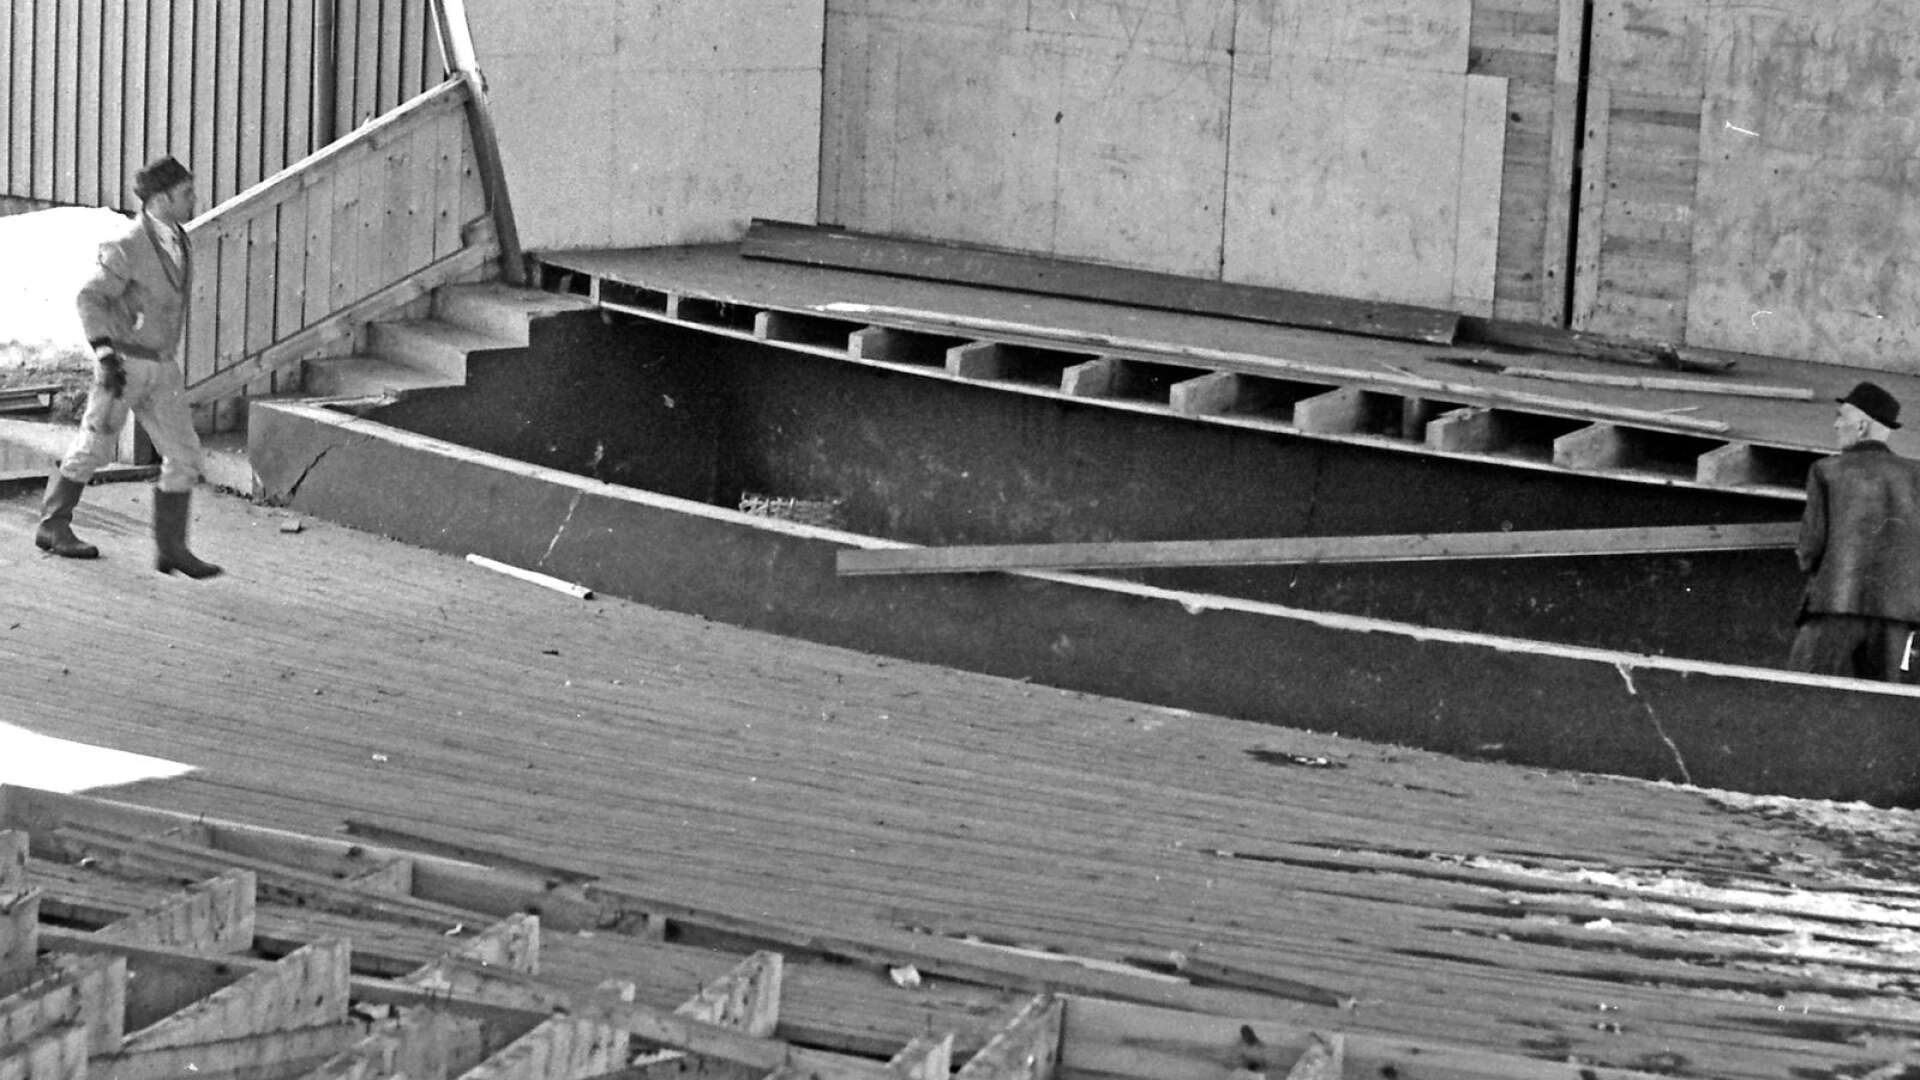 I slutet av mars 1969 pågick rivningen. Bit för bit plockades byggnaden ned. Här är det scengolvet, som trampats av så många berömda artister, som bryts upp. 